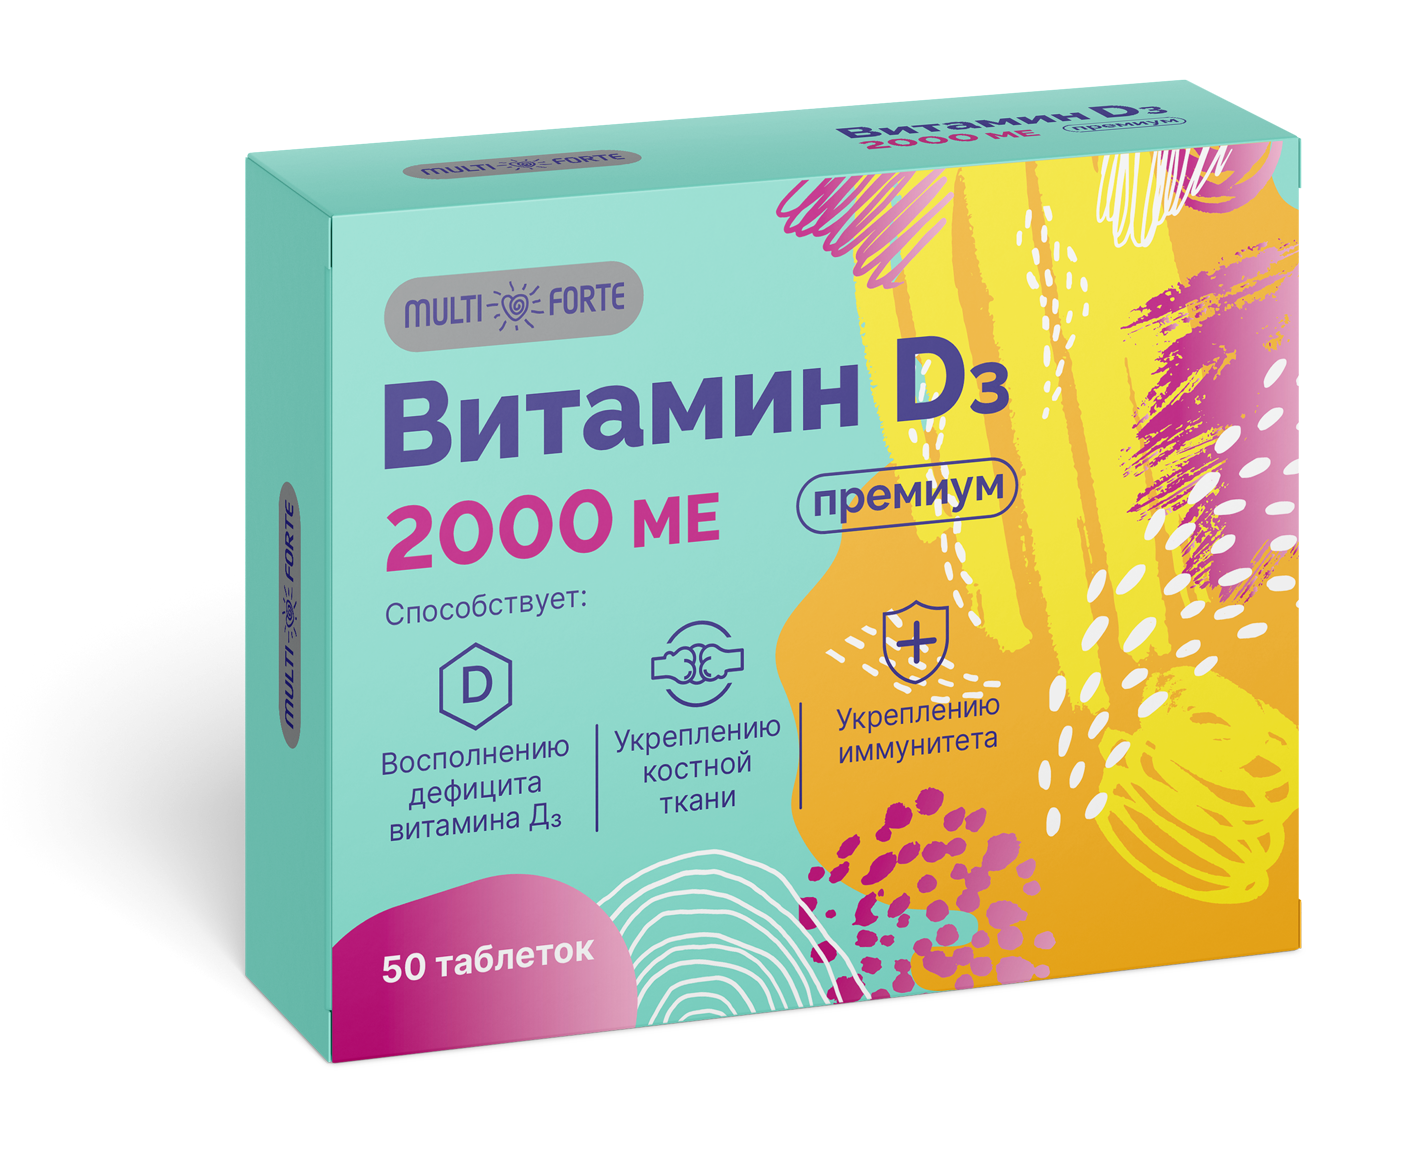 Витамин D3 Премиум MultiForte, таблетки 2000 МЕ, 50 шт. natrol добавка биологически активная к пище витамин d3 ме 2000 vitamin d3 2 000 iu f d 90 быстрорастворимых таблеток